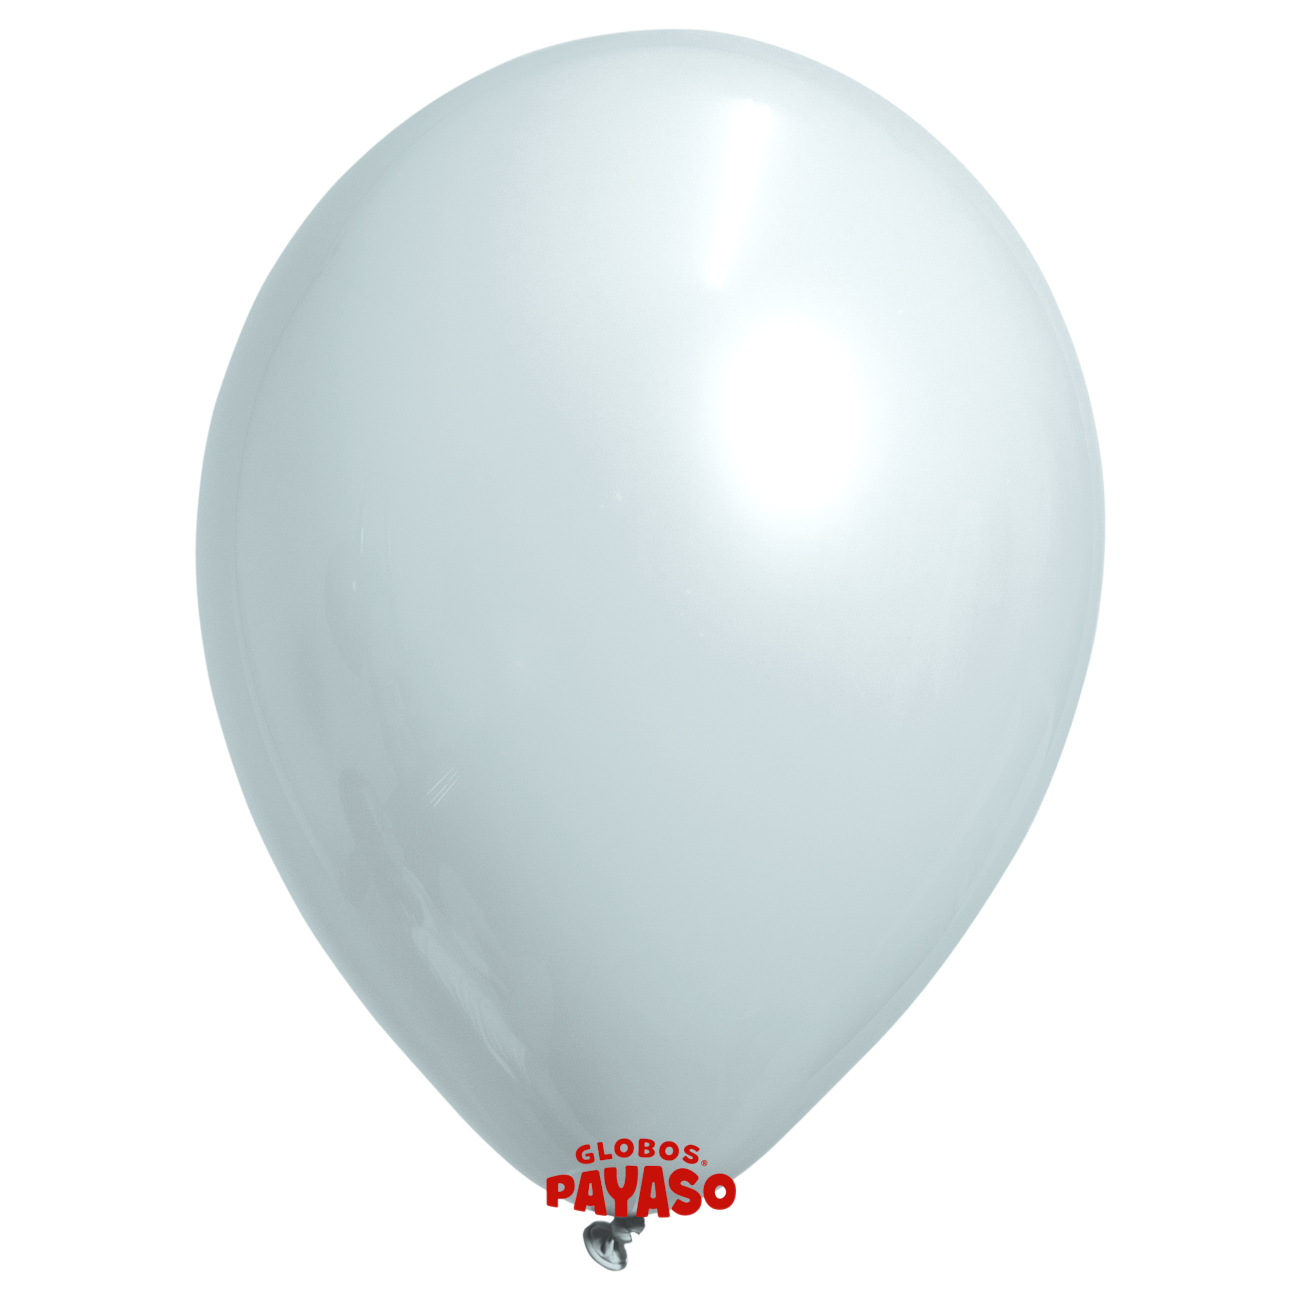 Globos Payaso / Unique 12" Blueberry Macaroon Balloon